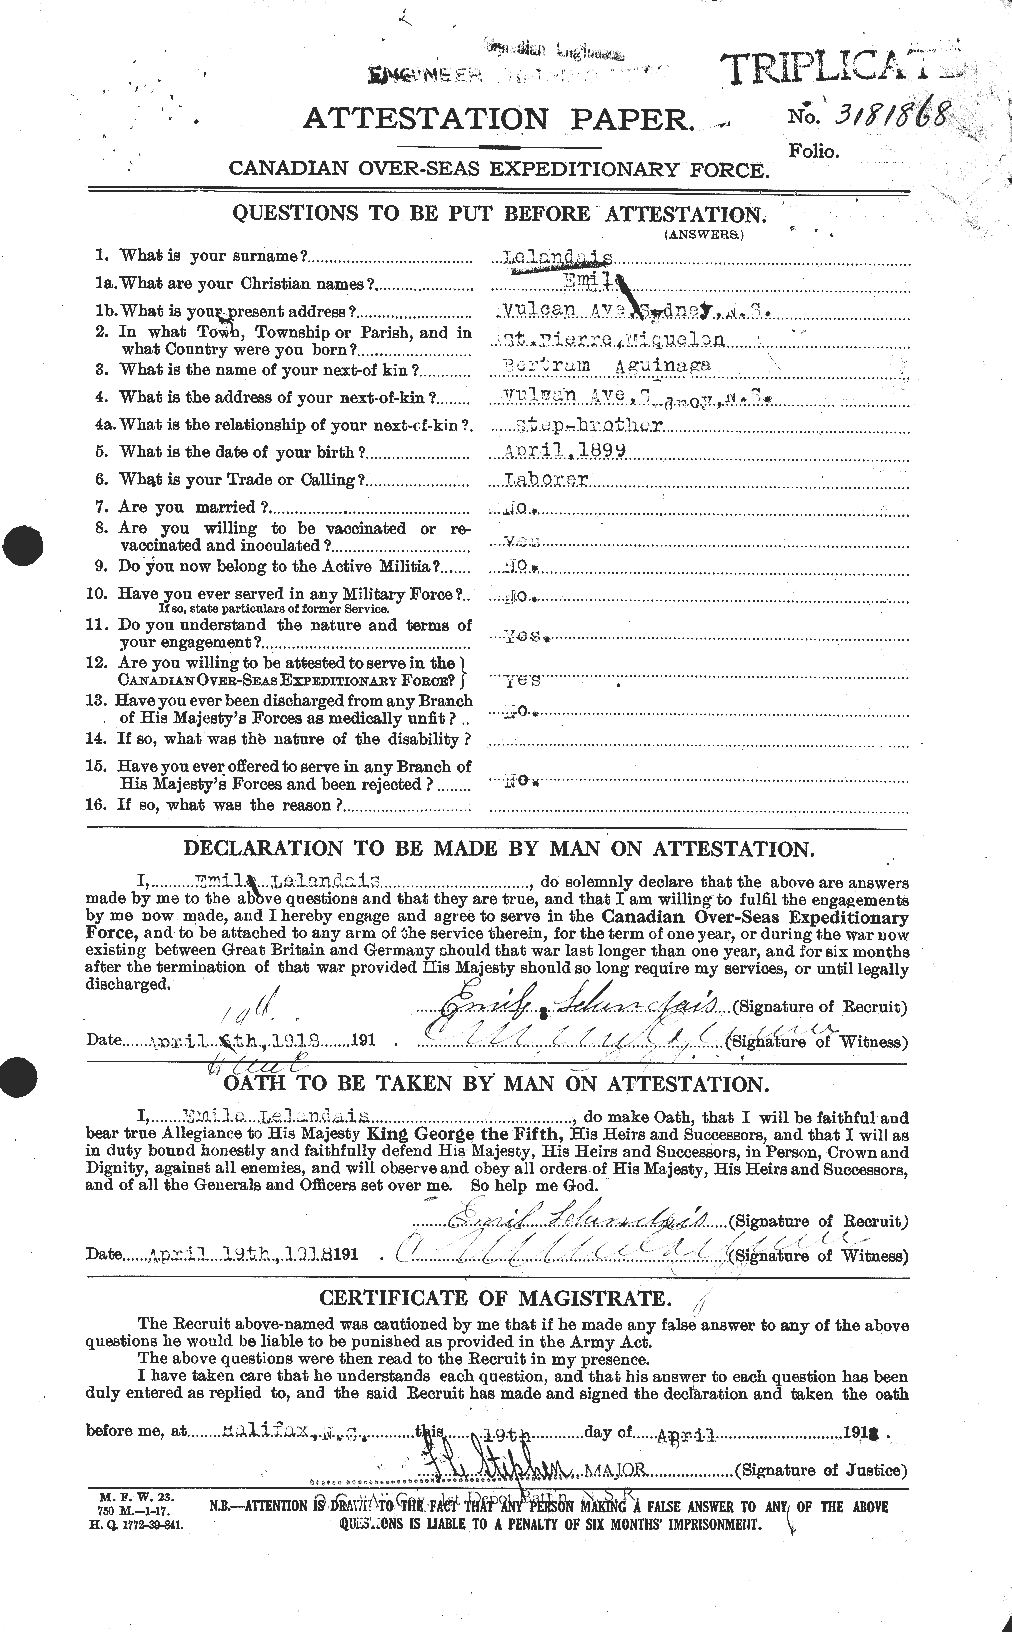 Dossiers du Personnel de la Première Guerre mondiale - CEC 465631a